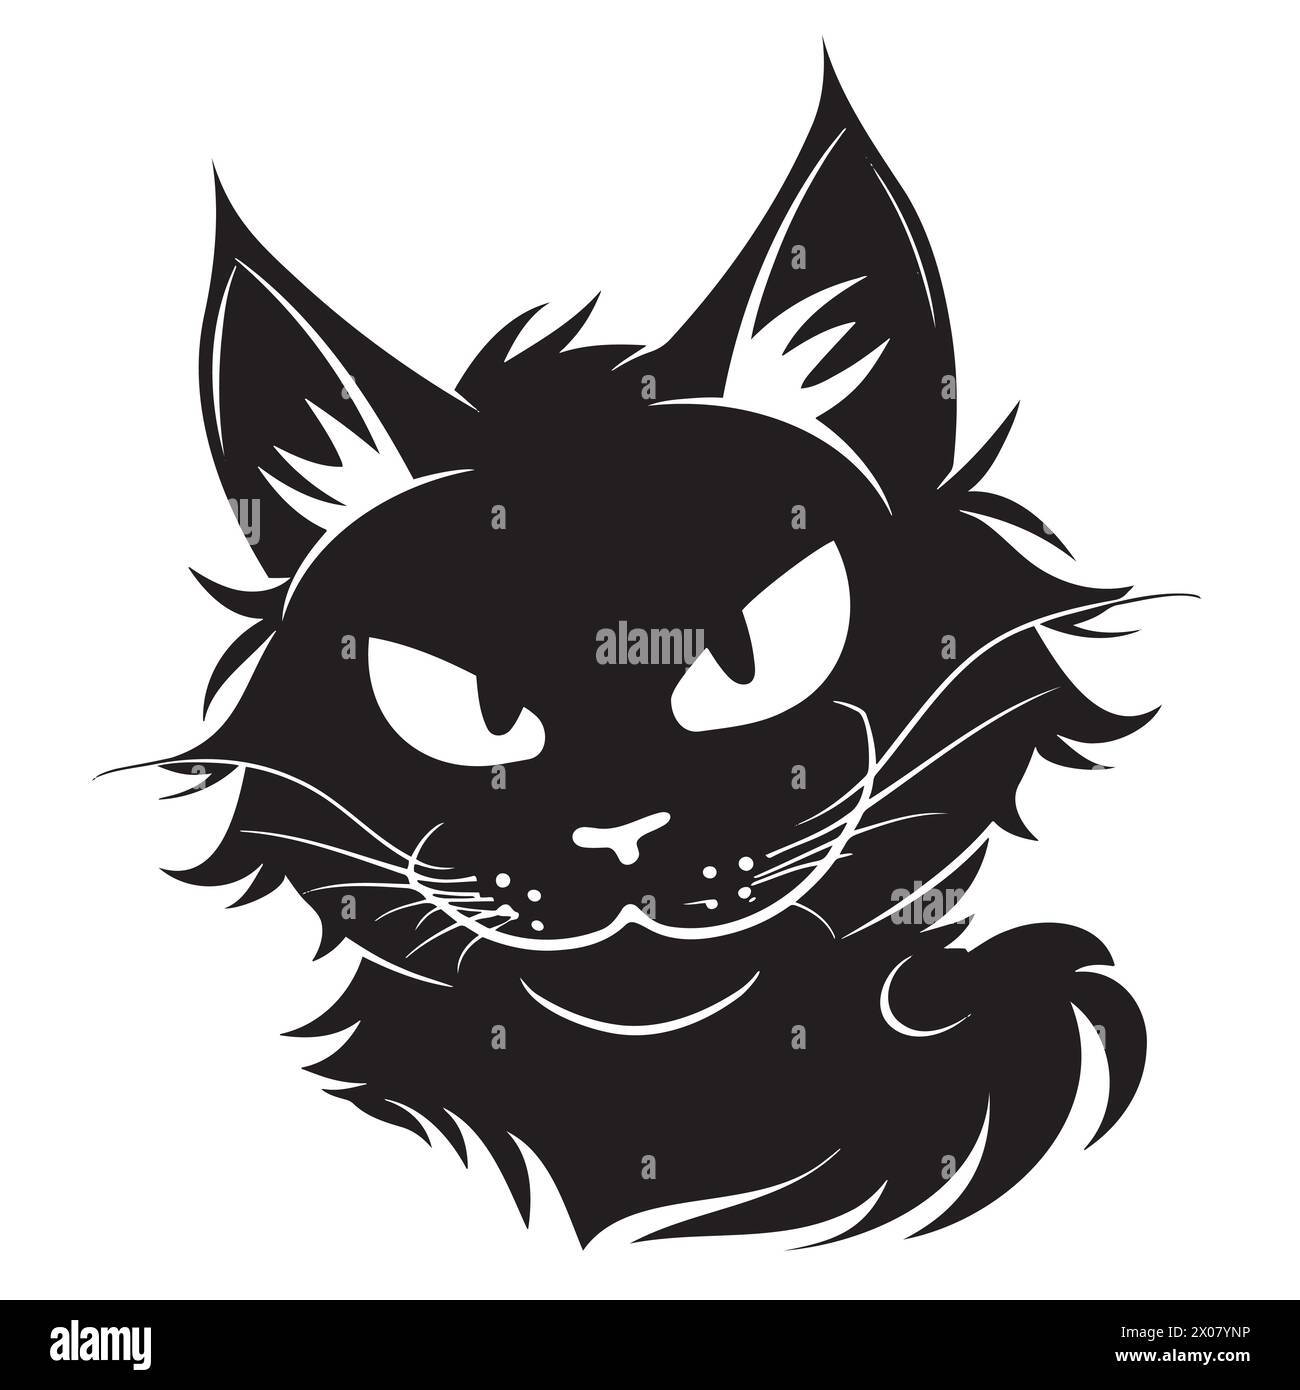 Schwarz-weiß-Zeichnung einer Katze Stock Vektor